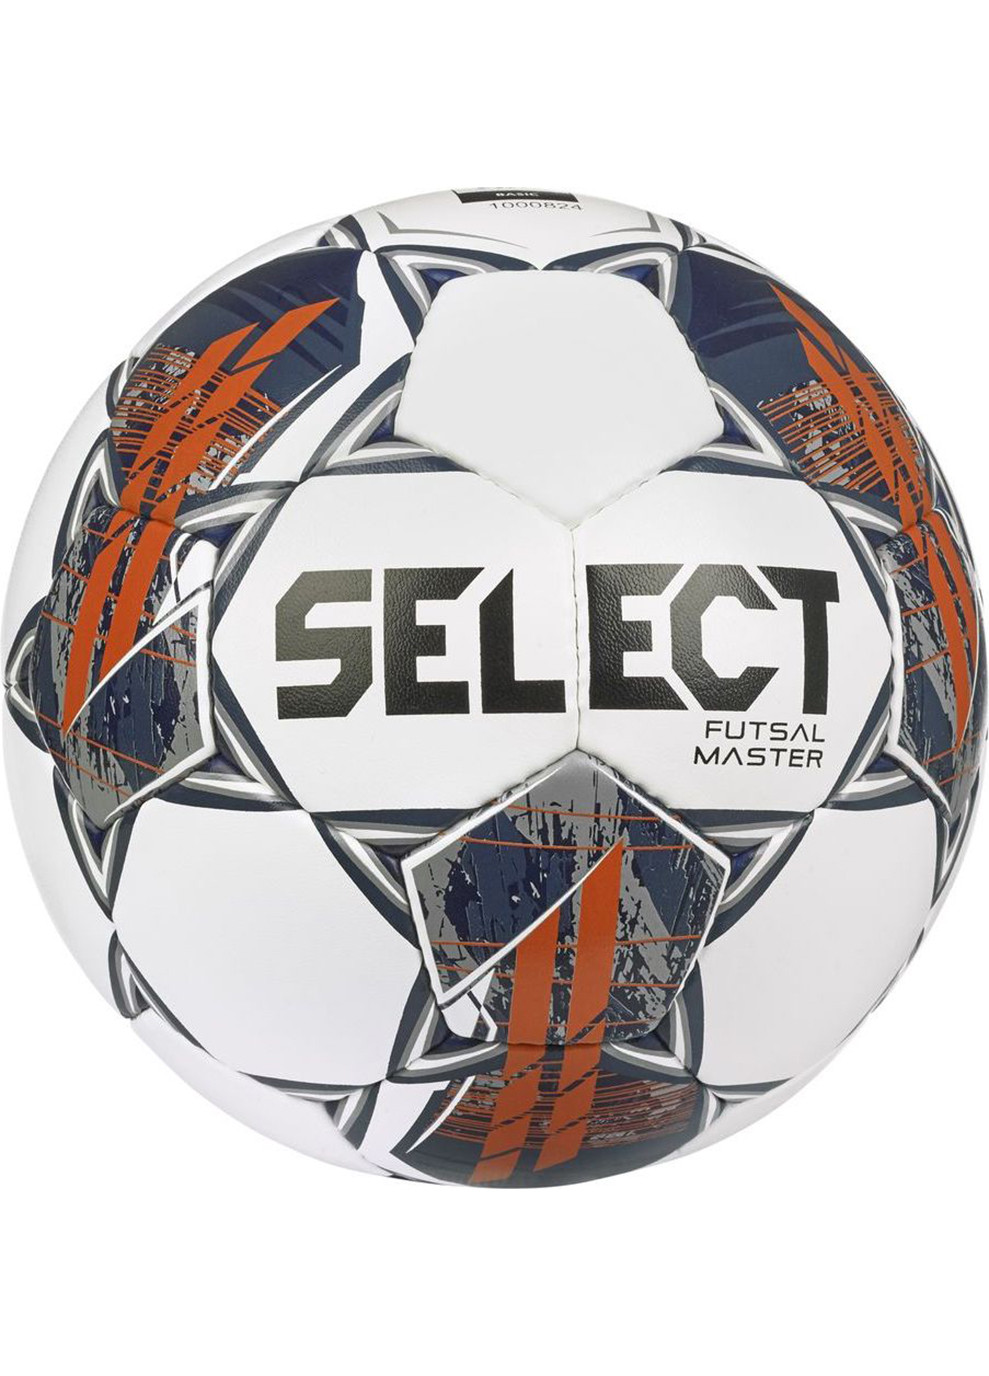 М'яч футзальний Futsal Master v22 білий/помпранчевий Уни 4 (104346-358-4) Select (254315221)